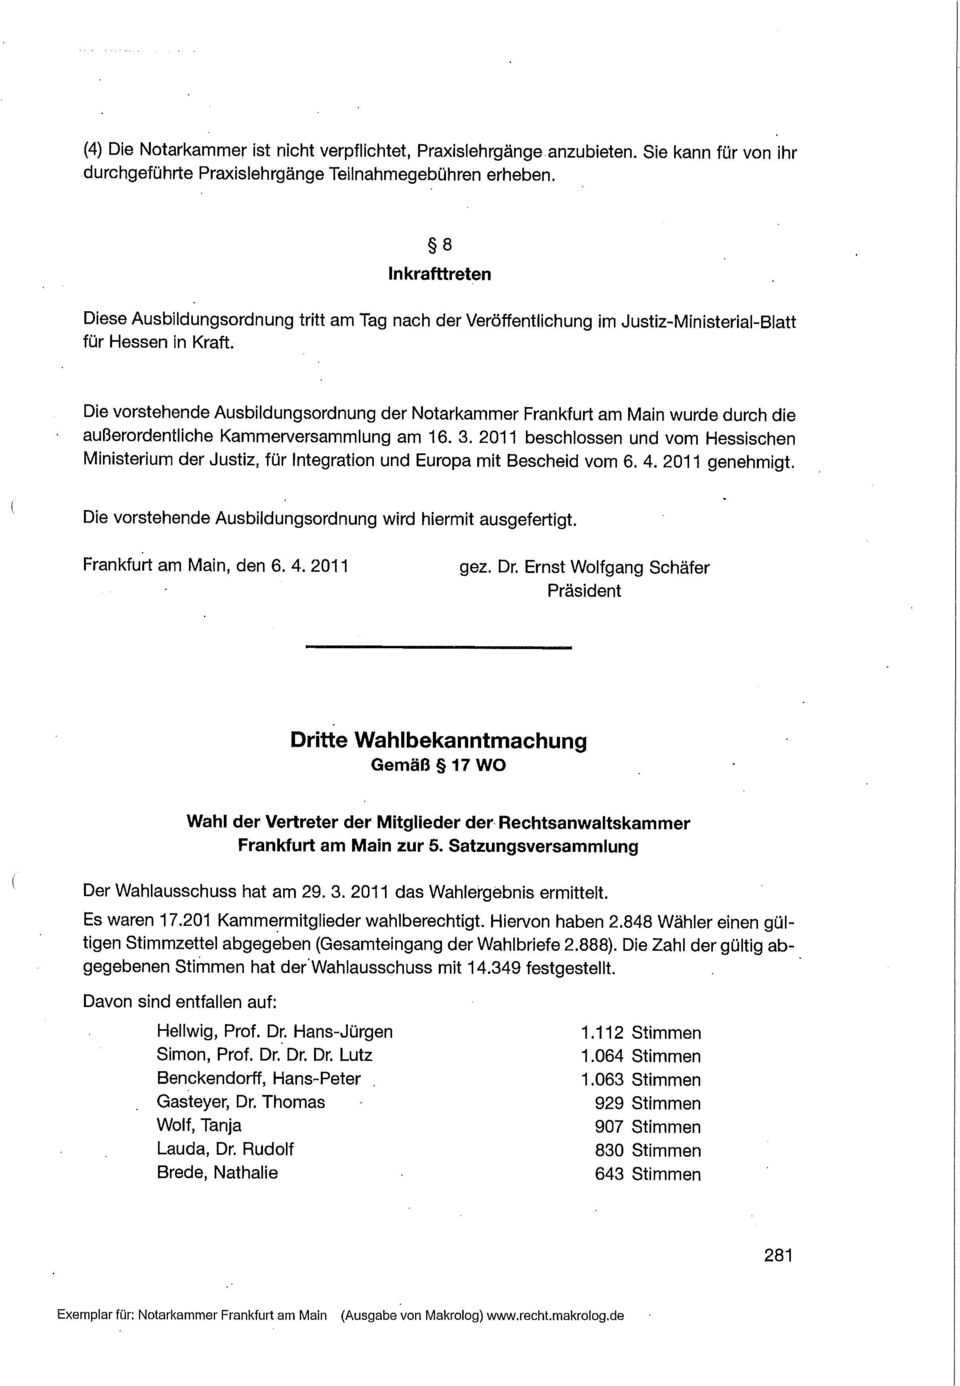 Die vorstehende Ausbildungsordnung der Notarkammer Frankfurt am Main wurde durch die außerordentliche Kammerversammlung am 16. 3.